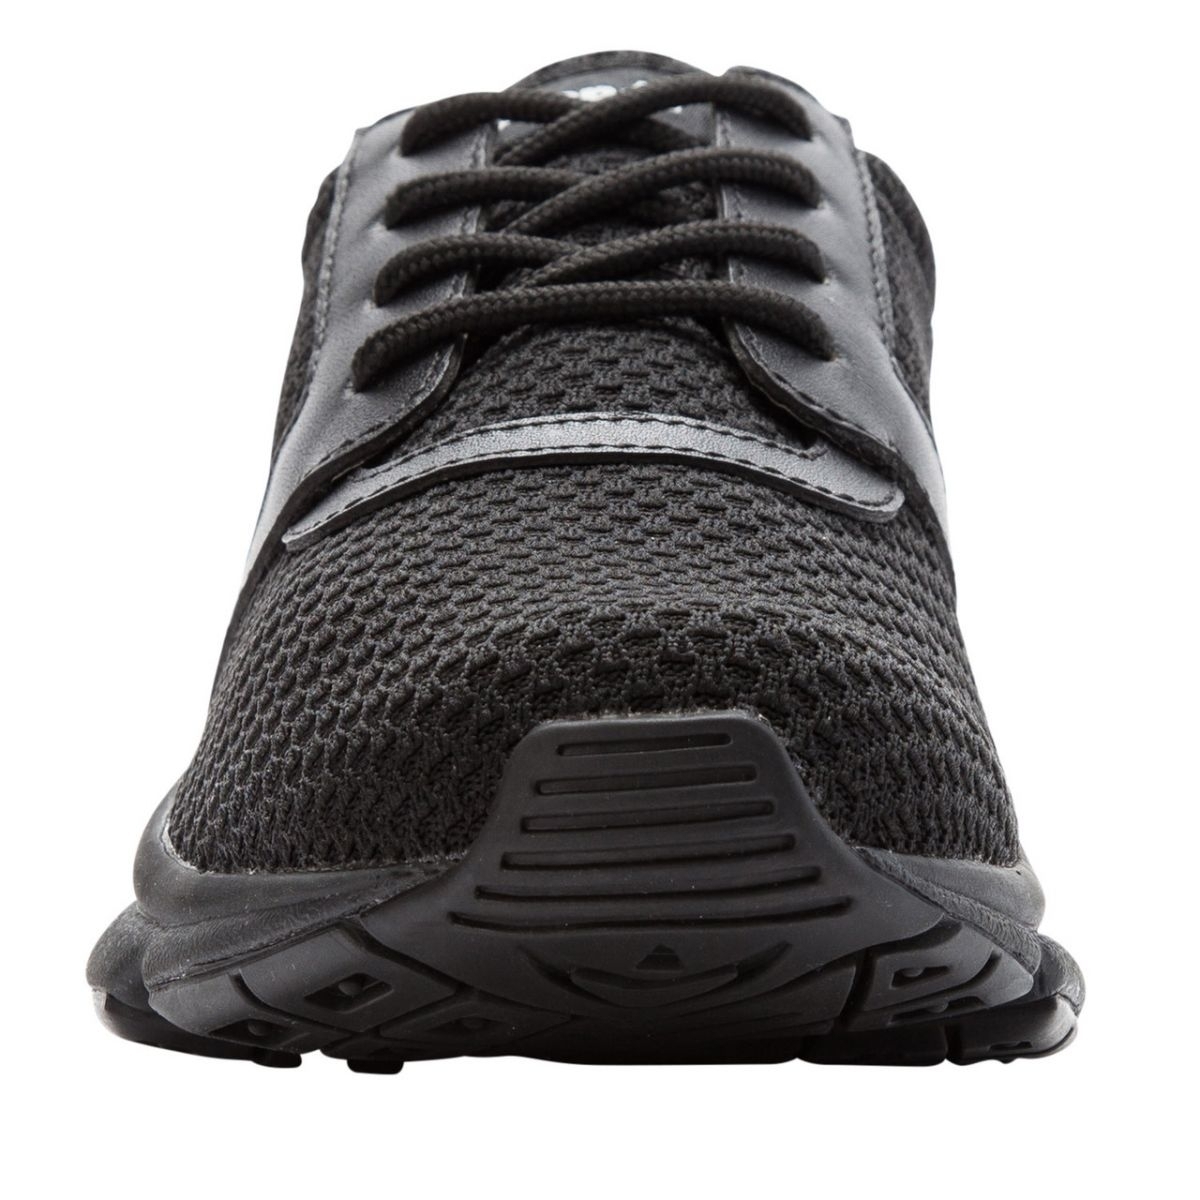 Propet Women's Stability X Walking Shoe Black - WAA032MBLK BLACK - BLACK, 7.5